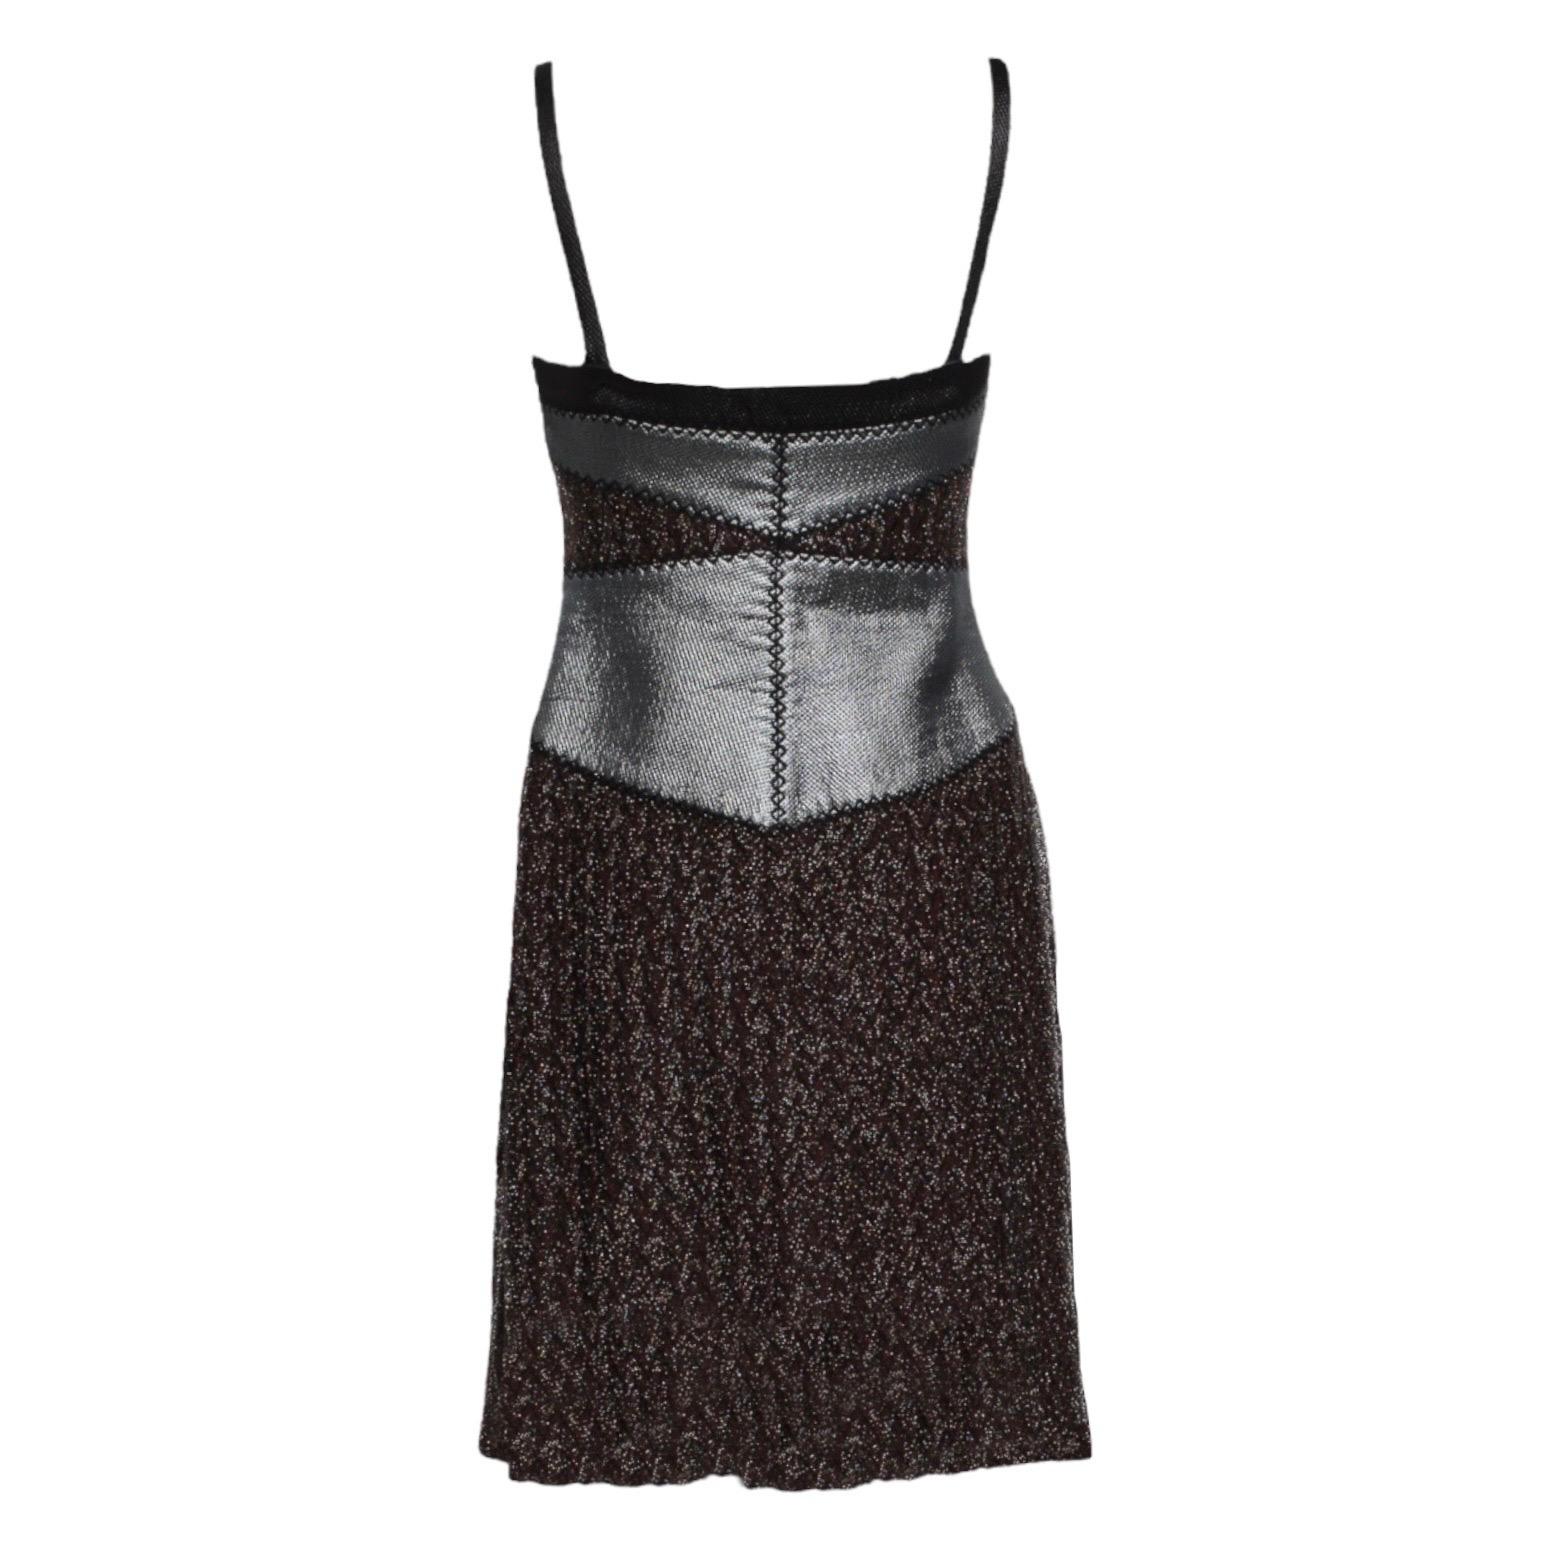 Das sexy Bodycon-Kleid von Missoni aus dem charakteristischen Häkelstrick des Labels lässt Sie glänzen wie ein Star
Schöner metallischer Häkelstrickstoff 
Hervorgehoben durch einen metallisch schimmernden Stoffeinsatz
Abnehmbare Träger, kann